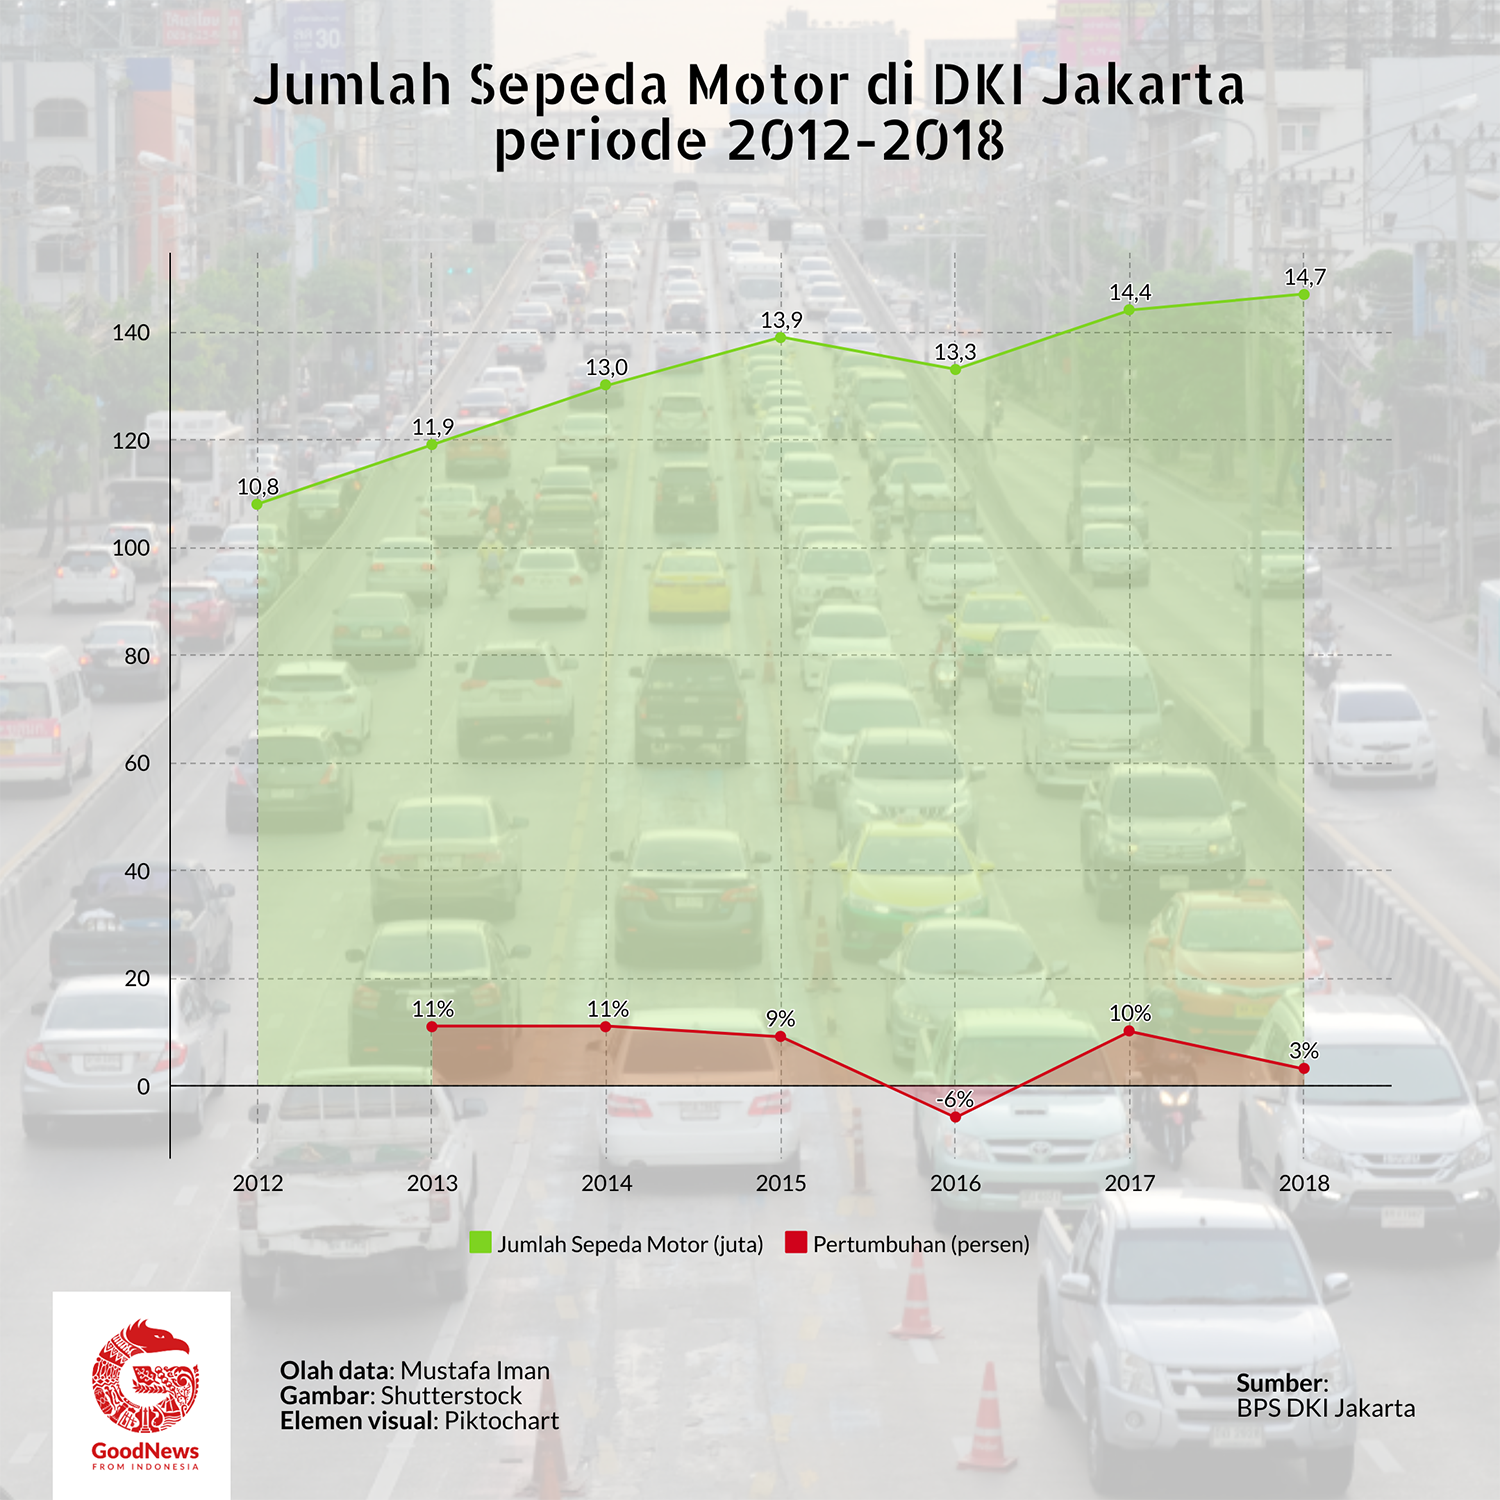 Jumlah sepeda motor di DKI Jakarta 2012-2018